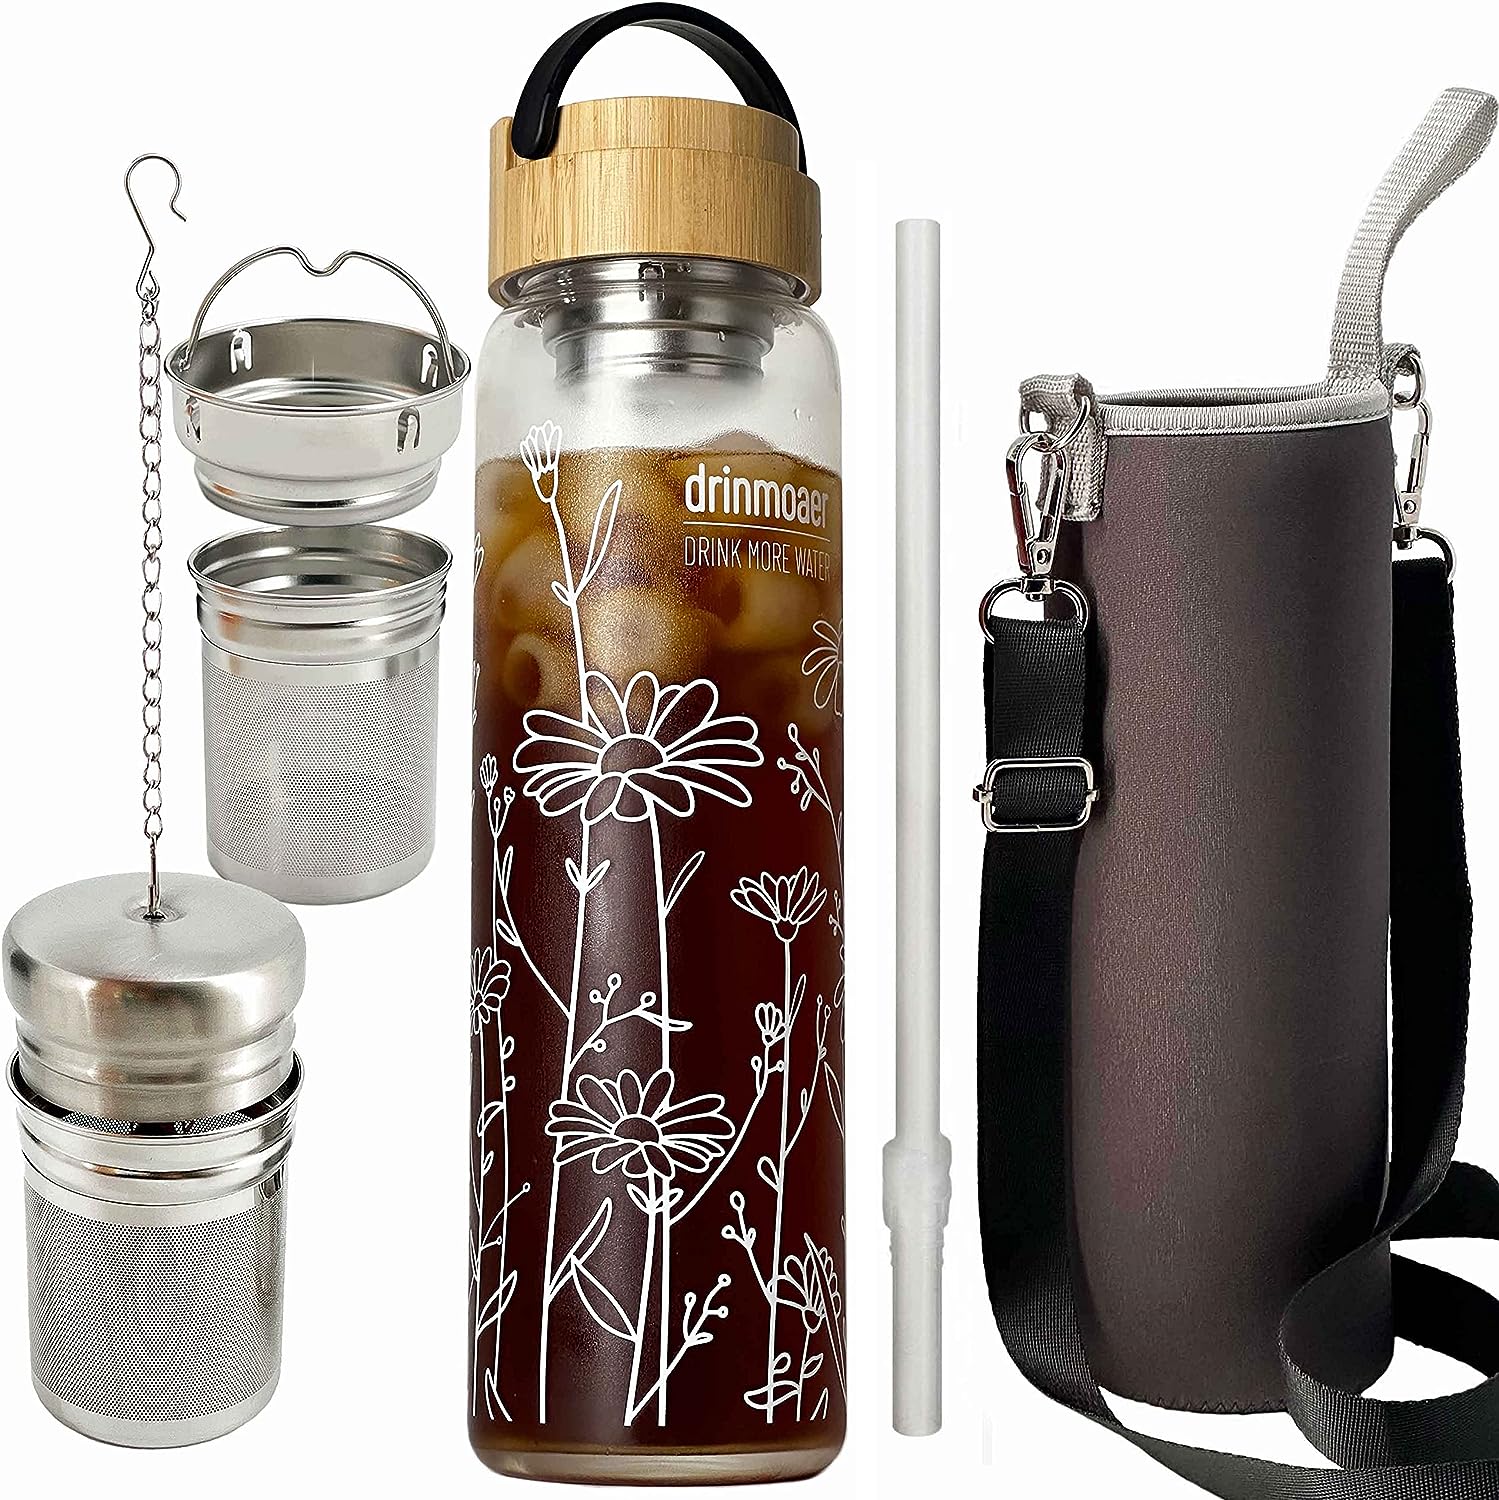 drinmoaer 1 Liter Trinkflasche Glas mit Bambus Deckel und Hülle für losen Tee, Teeflasche mit Sieb to go, Glass Water Bottle 1l (Blume)